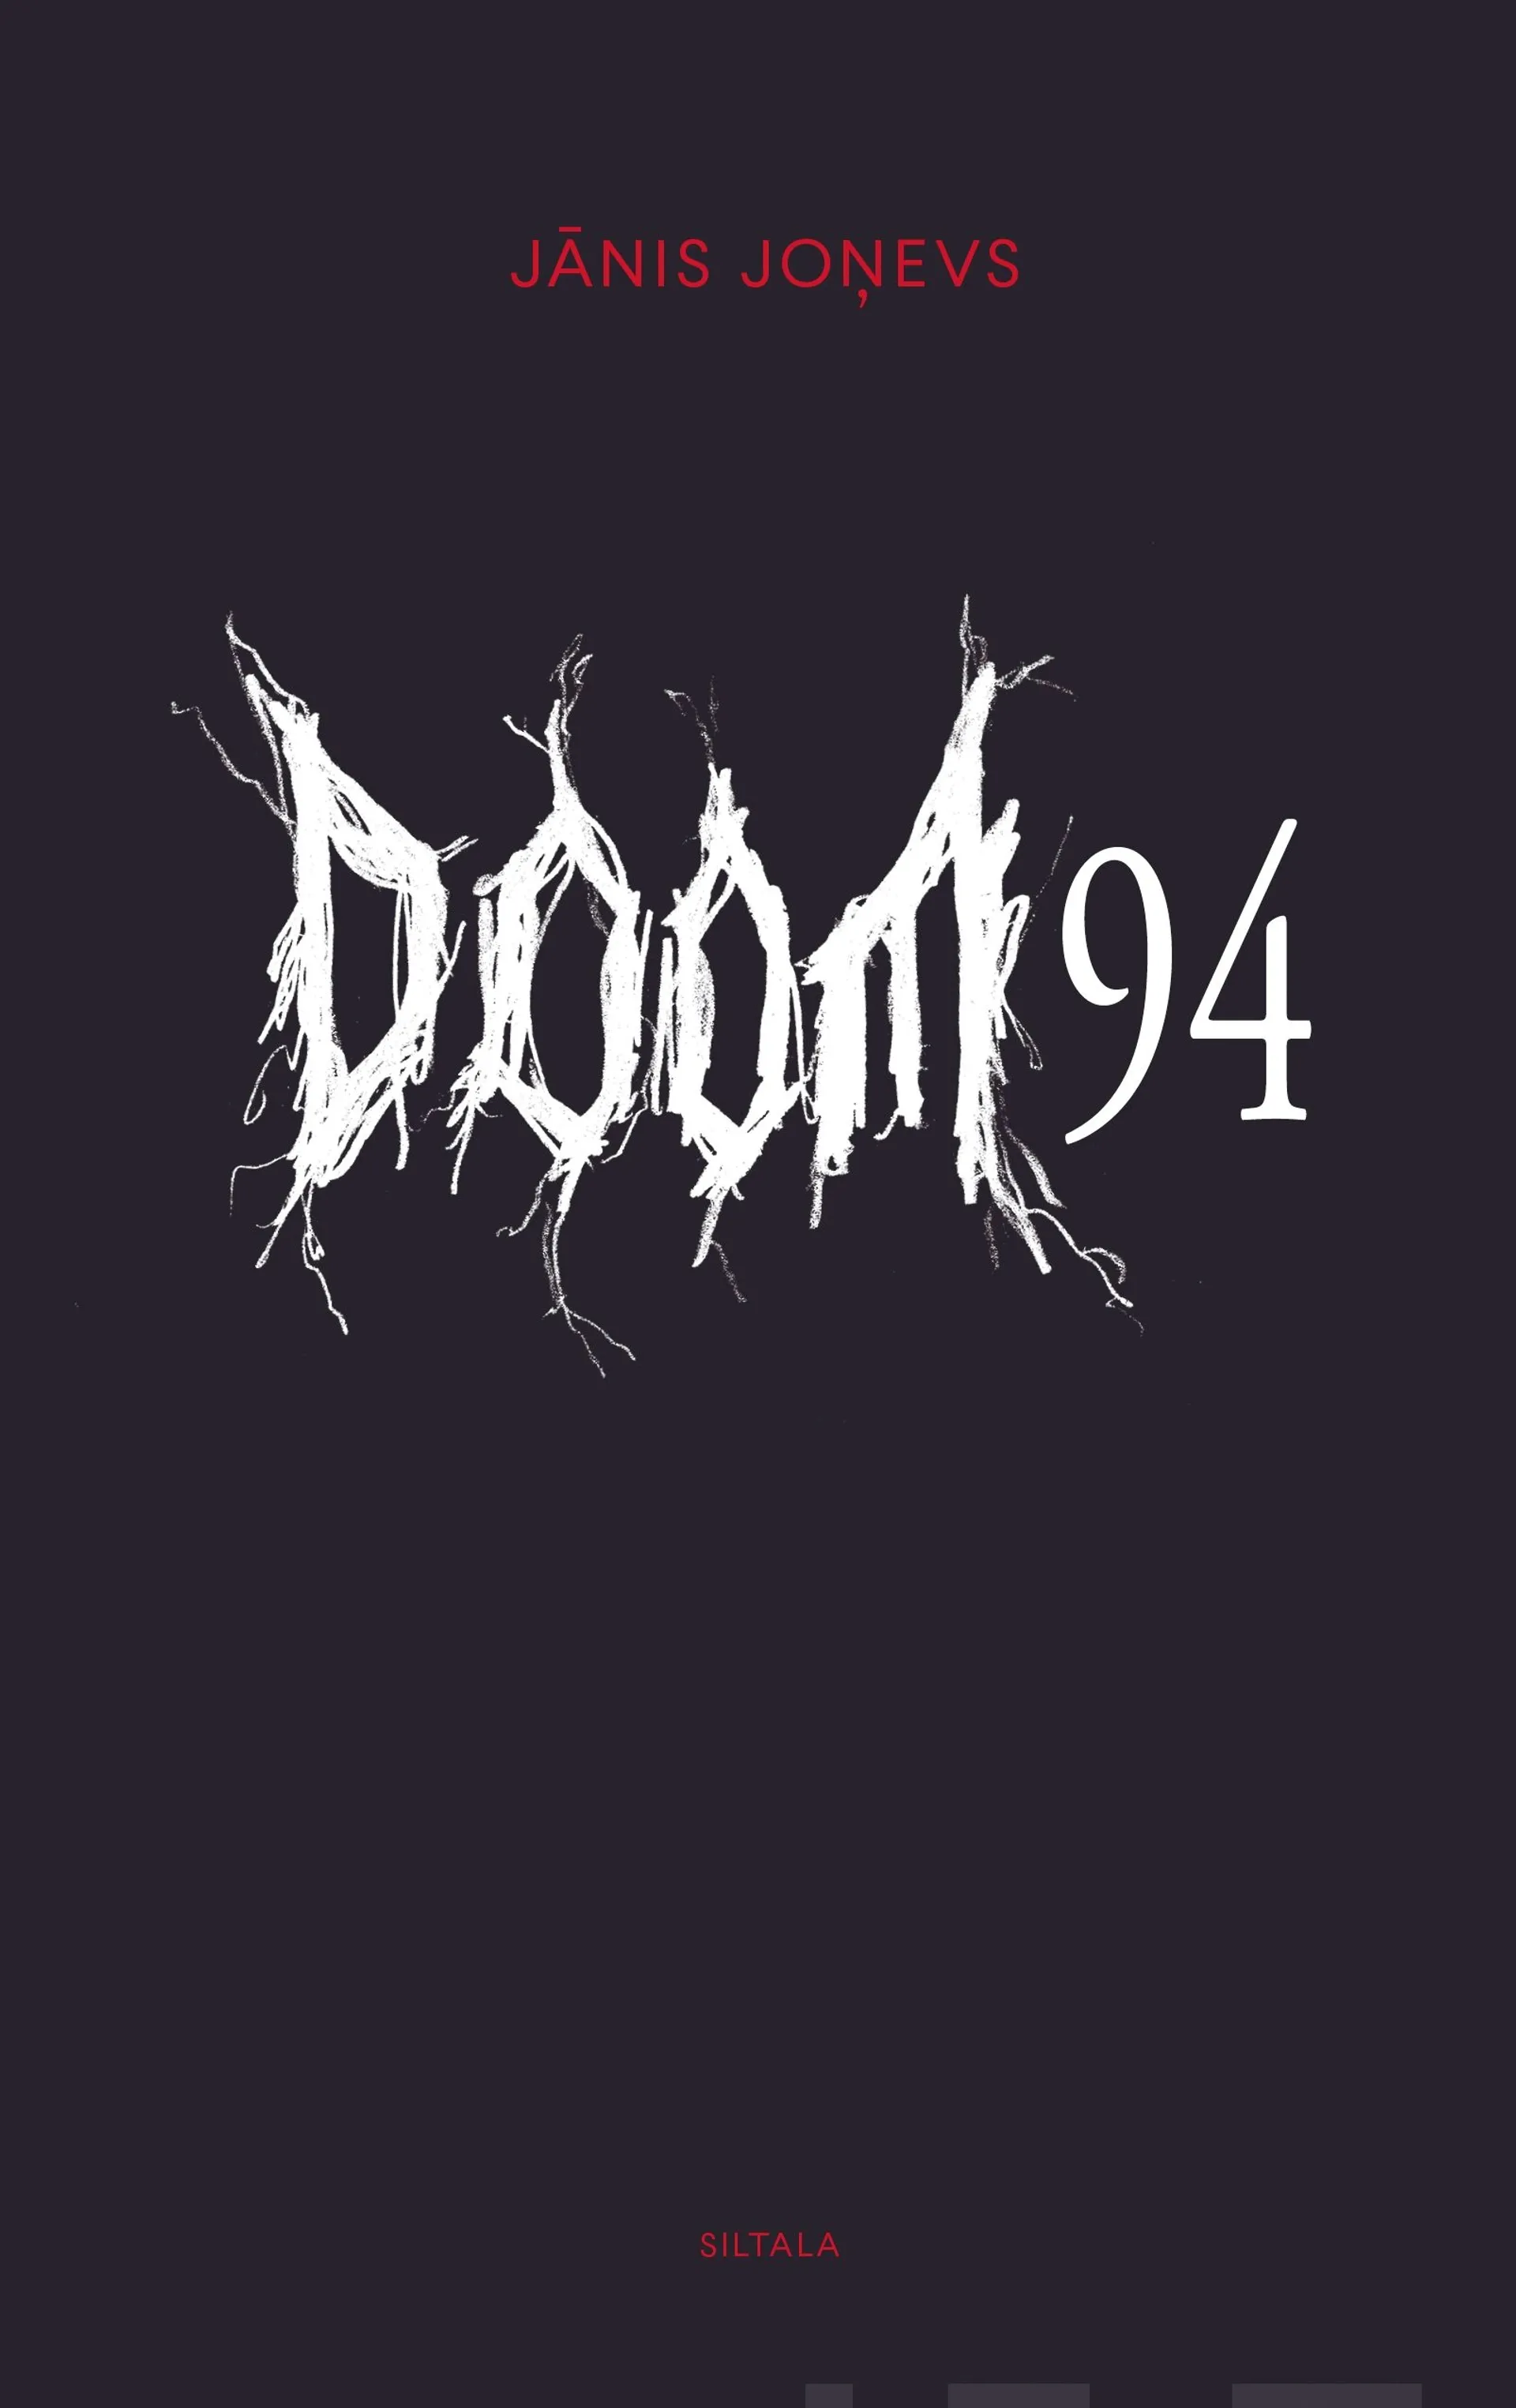 Jonevs, Doom 94